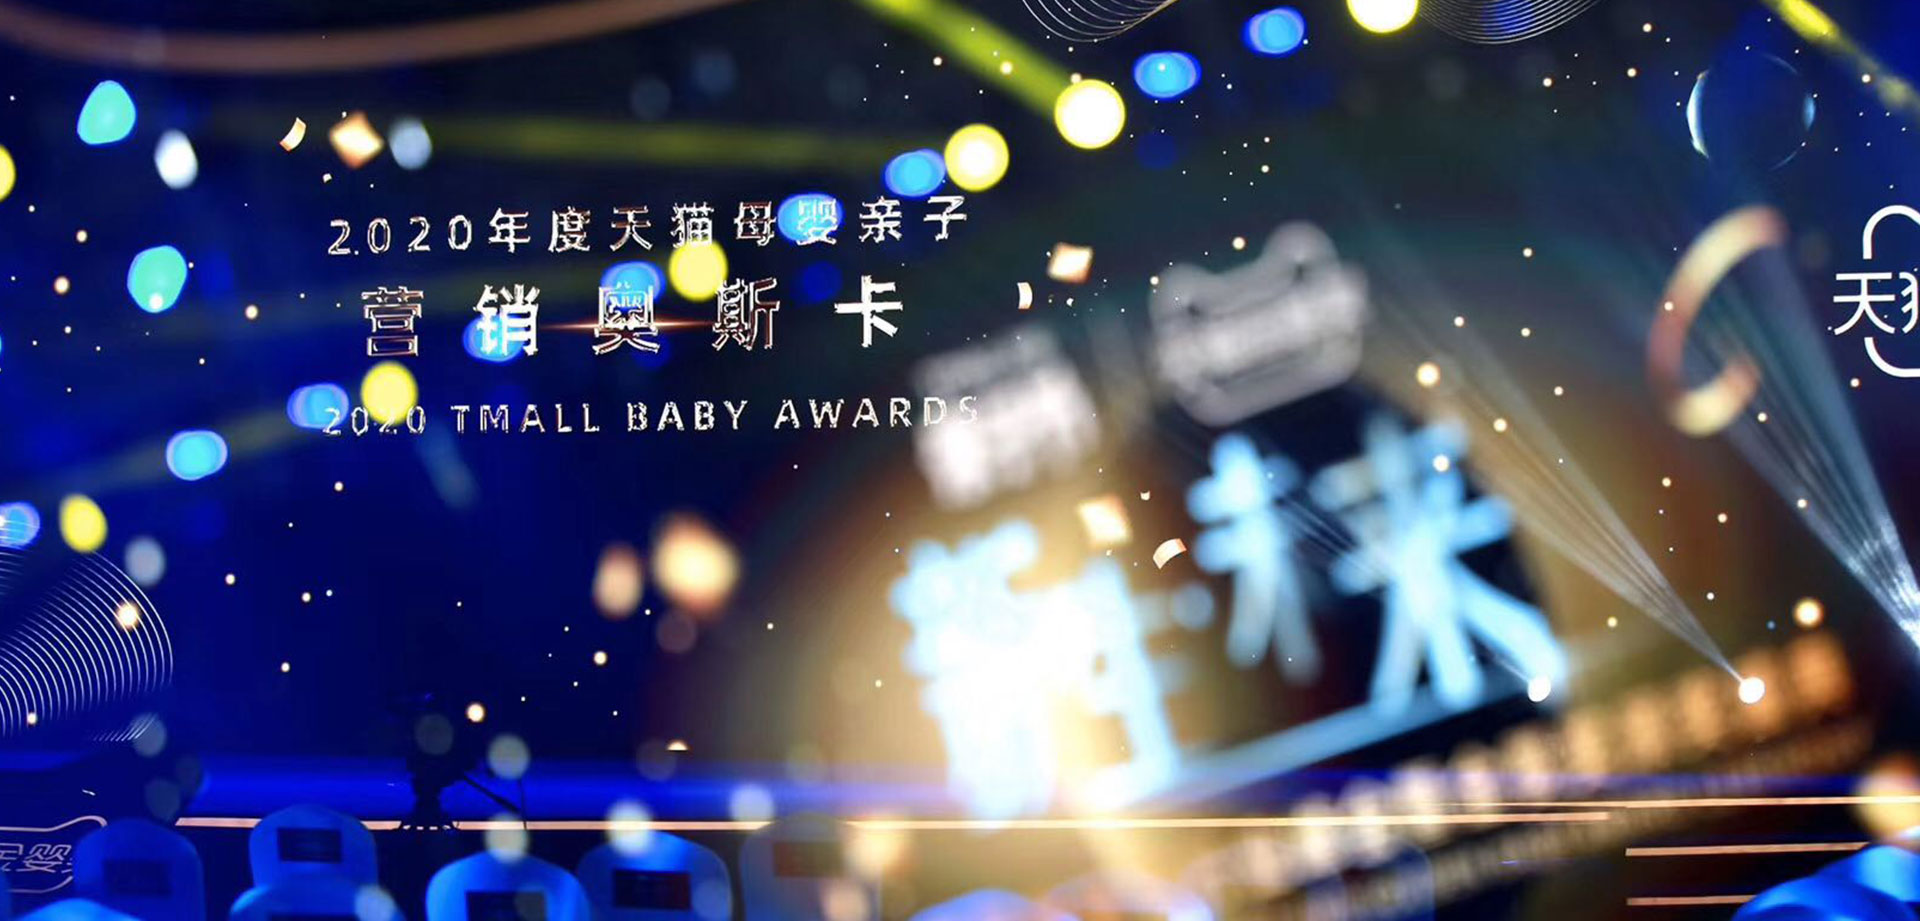 2020天猫母婴亲子行业峰会暨金婴奖颁奖盛典